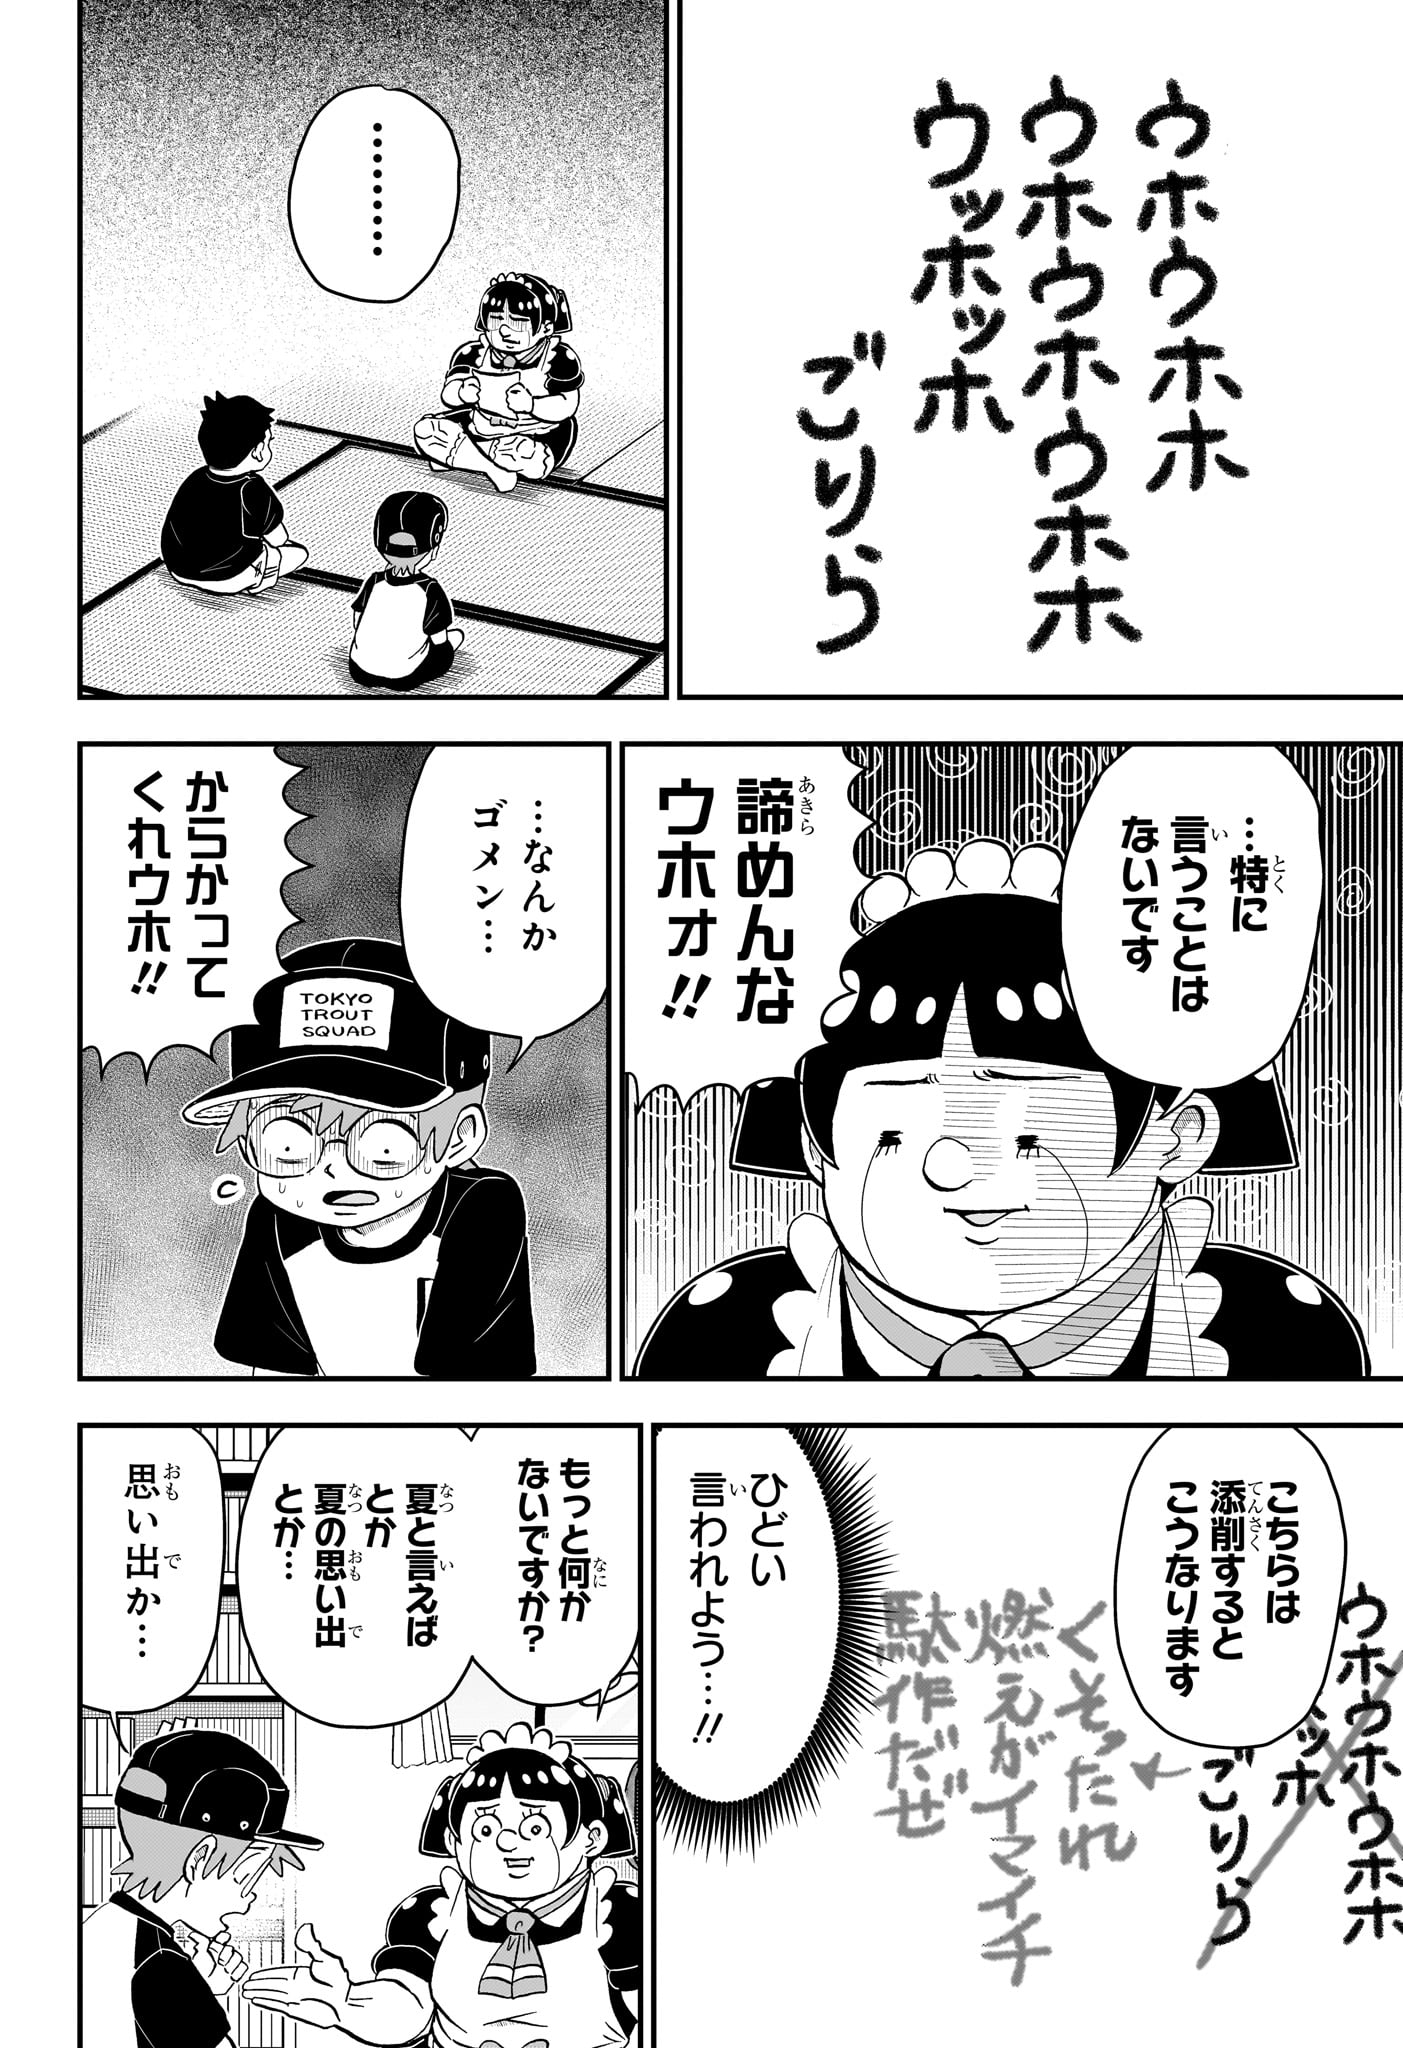 Boku to Roboko - Chapter 192 - Page 6